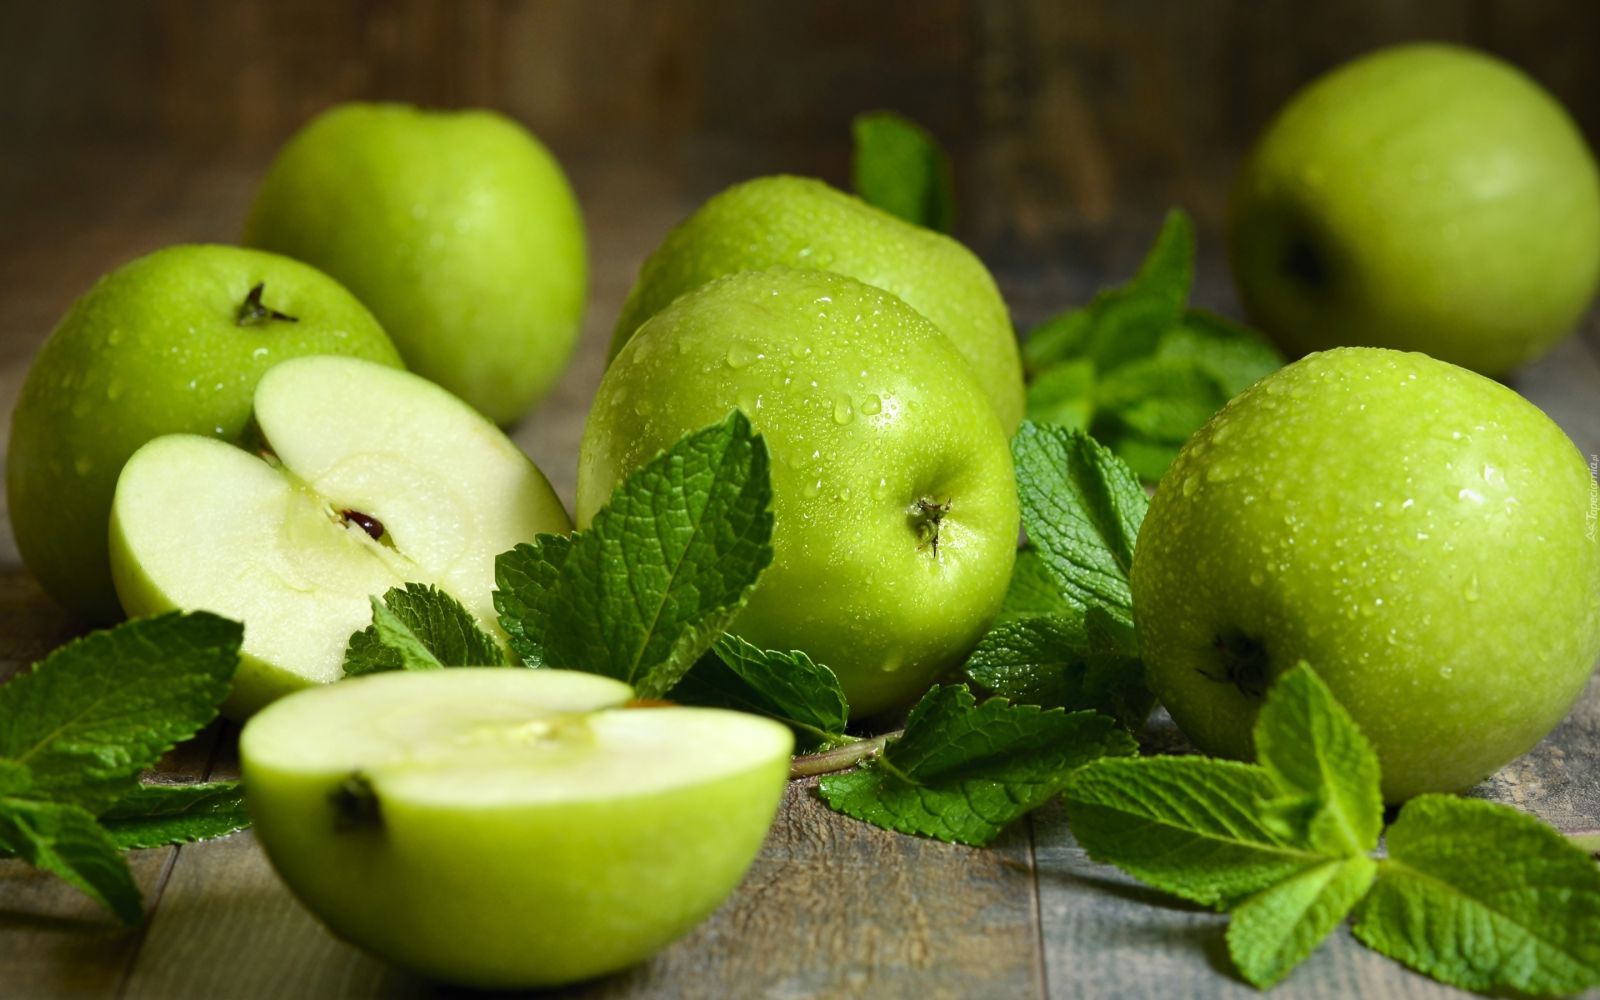 Táo là loại trái cây có hàm lượng calo thấp sẽ góp phần giảm lượng calo hấp thụ